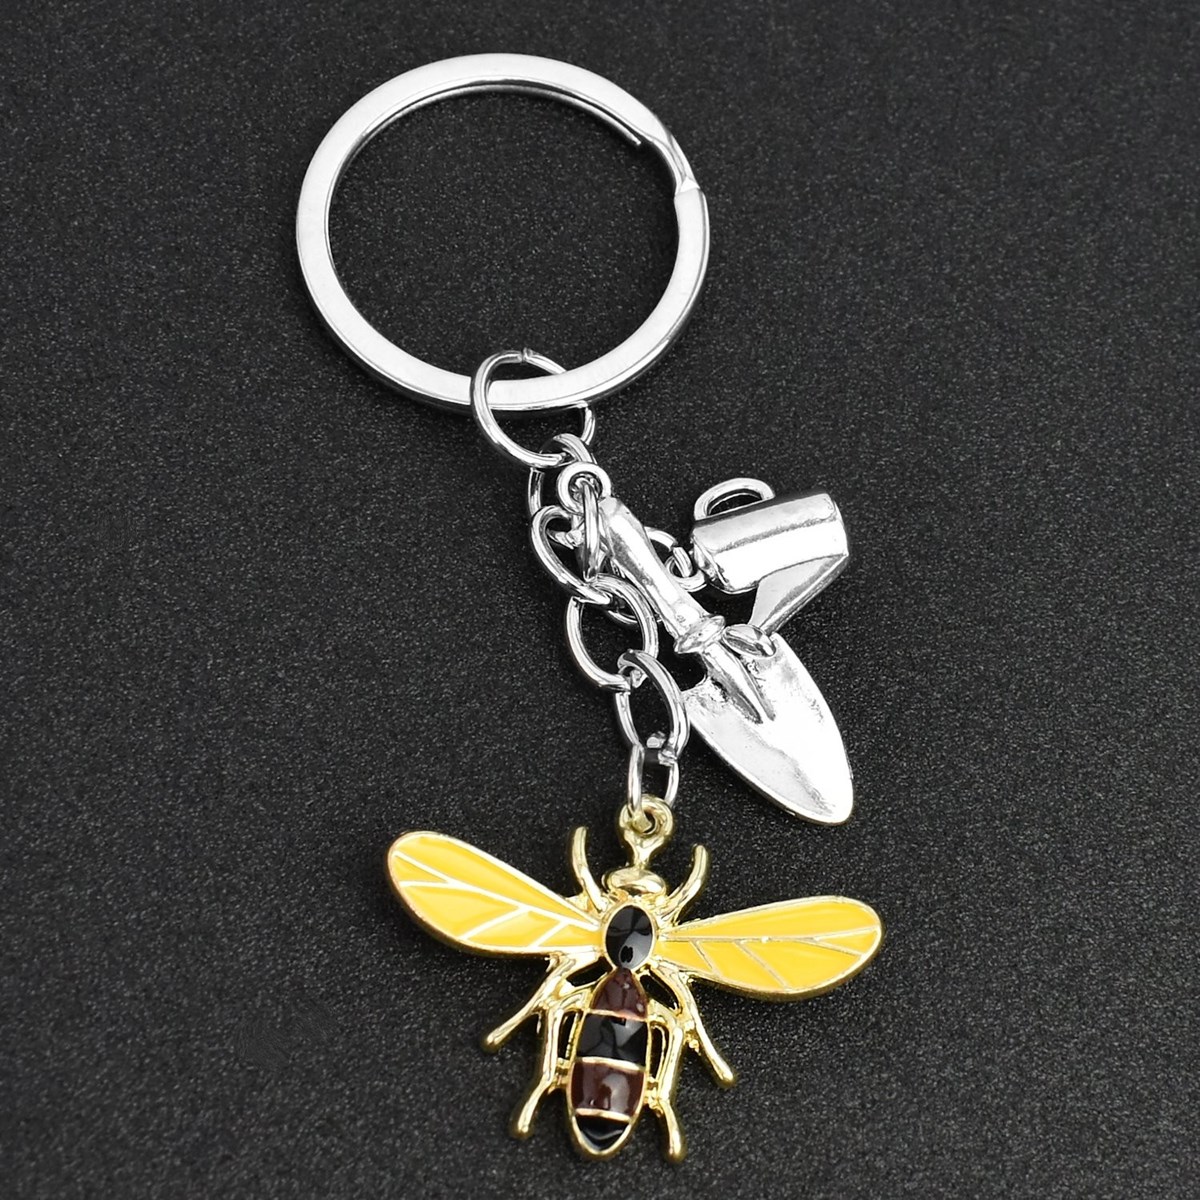 Porte-clés jardinier abeille pelle arrosoir argenté - vue 4